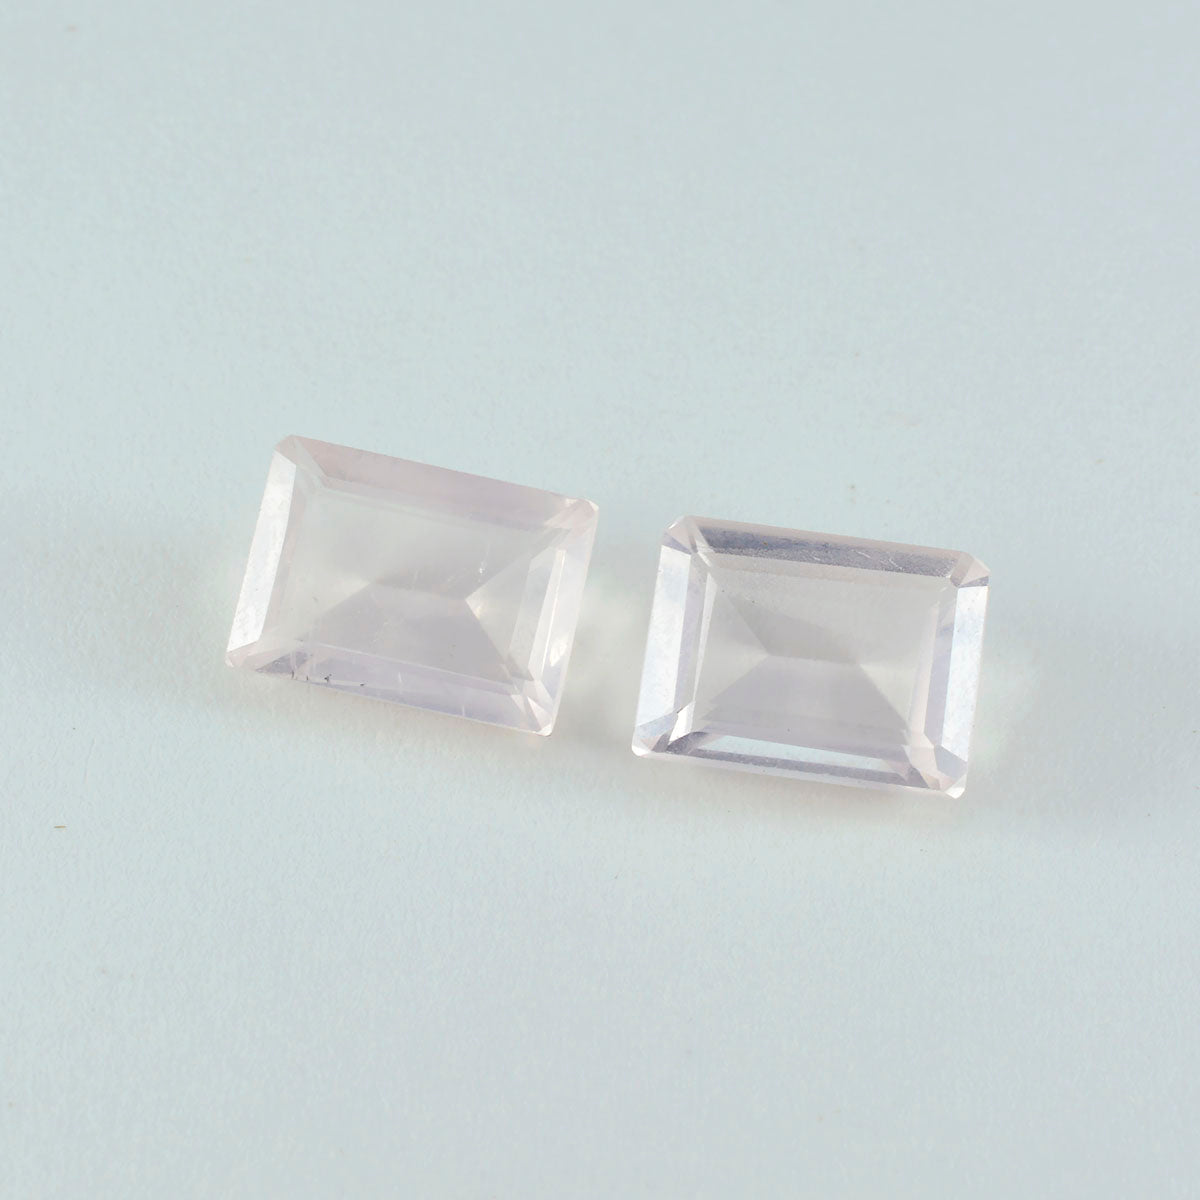 riyogems 1шт розовый кварц ограненный 12x16 мм восьмиугольная форма качество AAA россыпь драгоценный камень